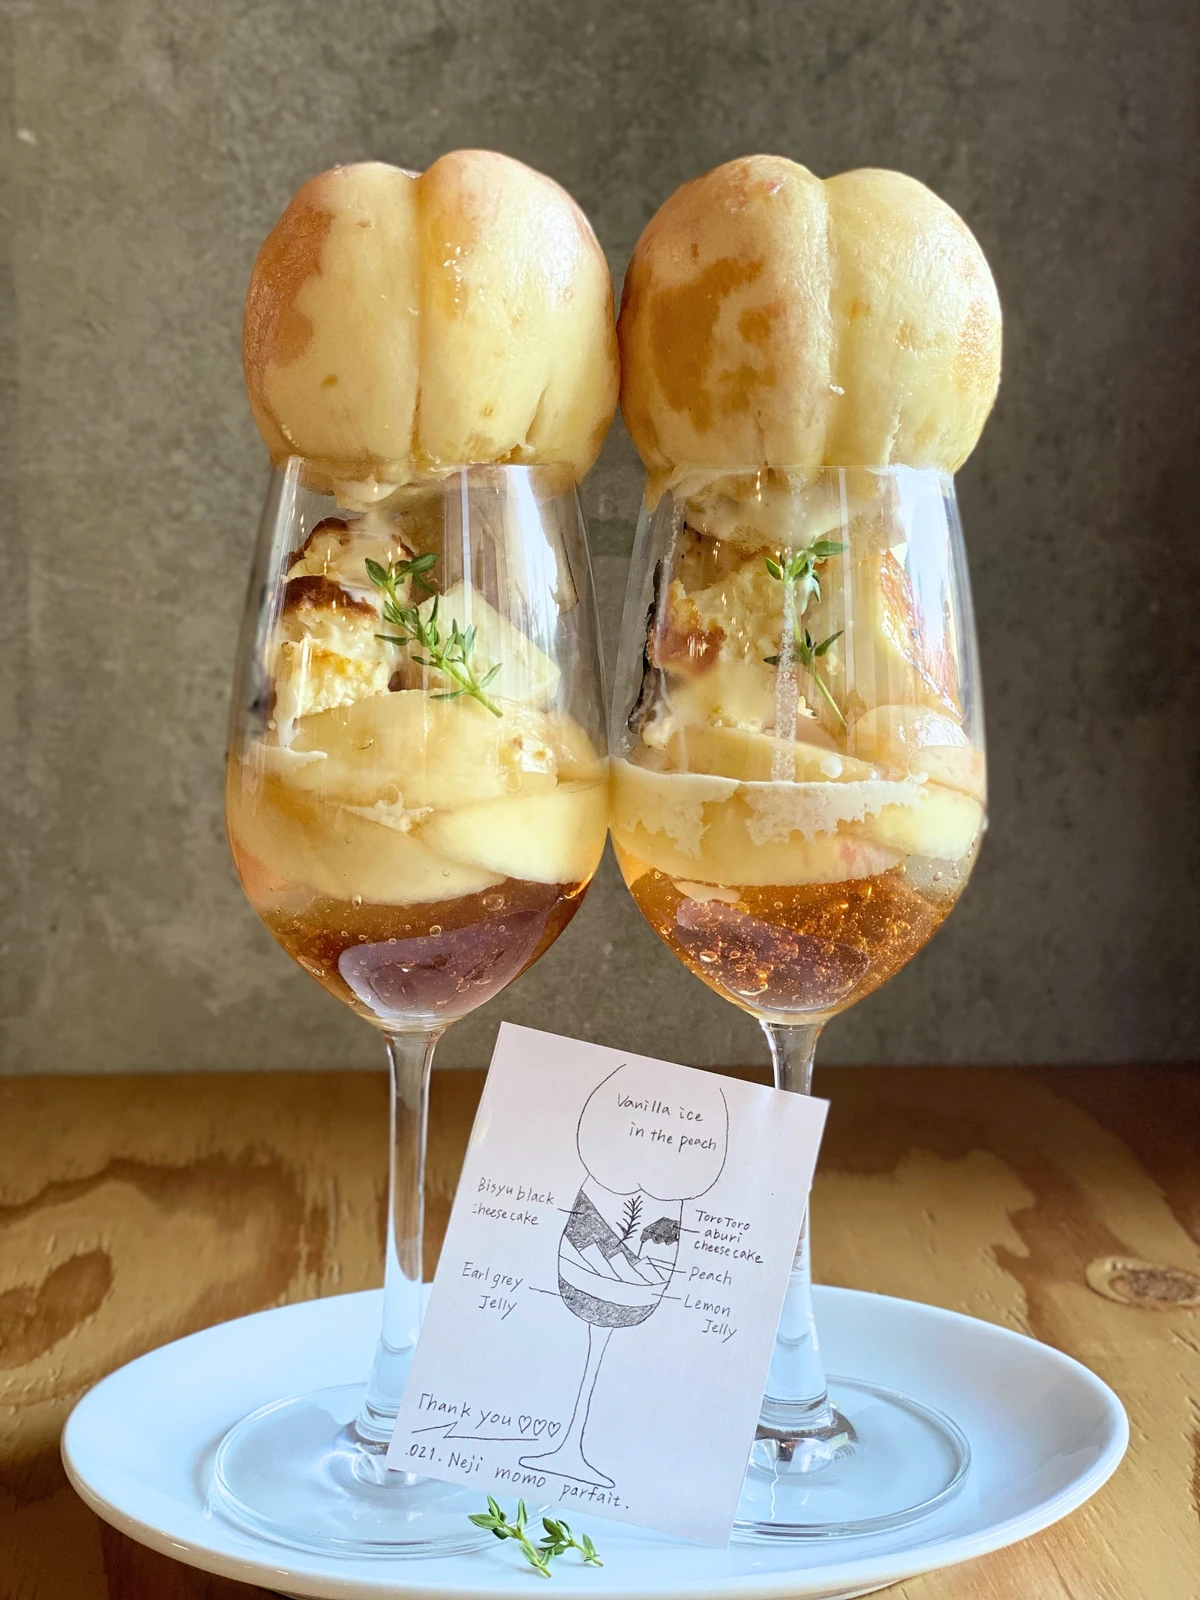 愛知 一宮市 チーズケーキが激うまなおしゃれカフェ Chii5951が投稿したフォトブック Lemon8